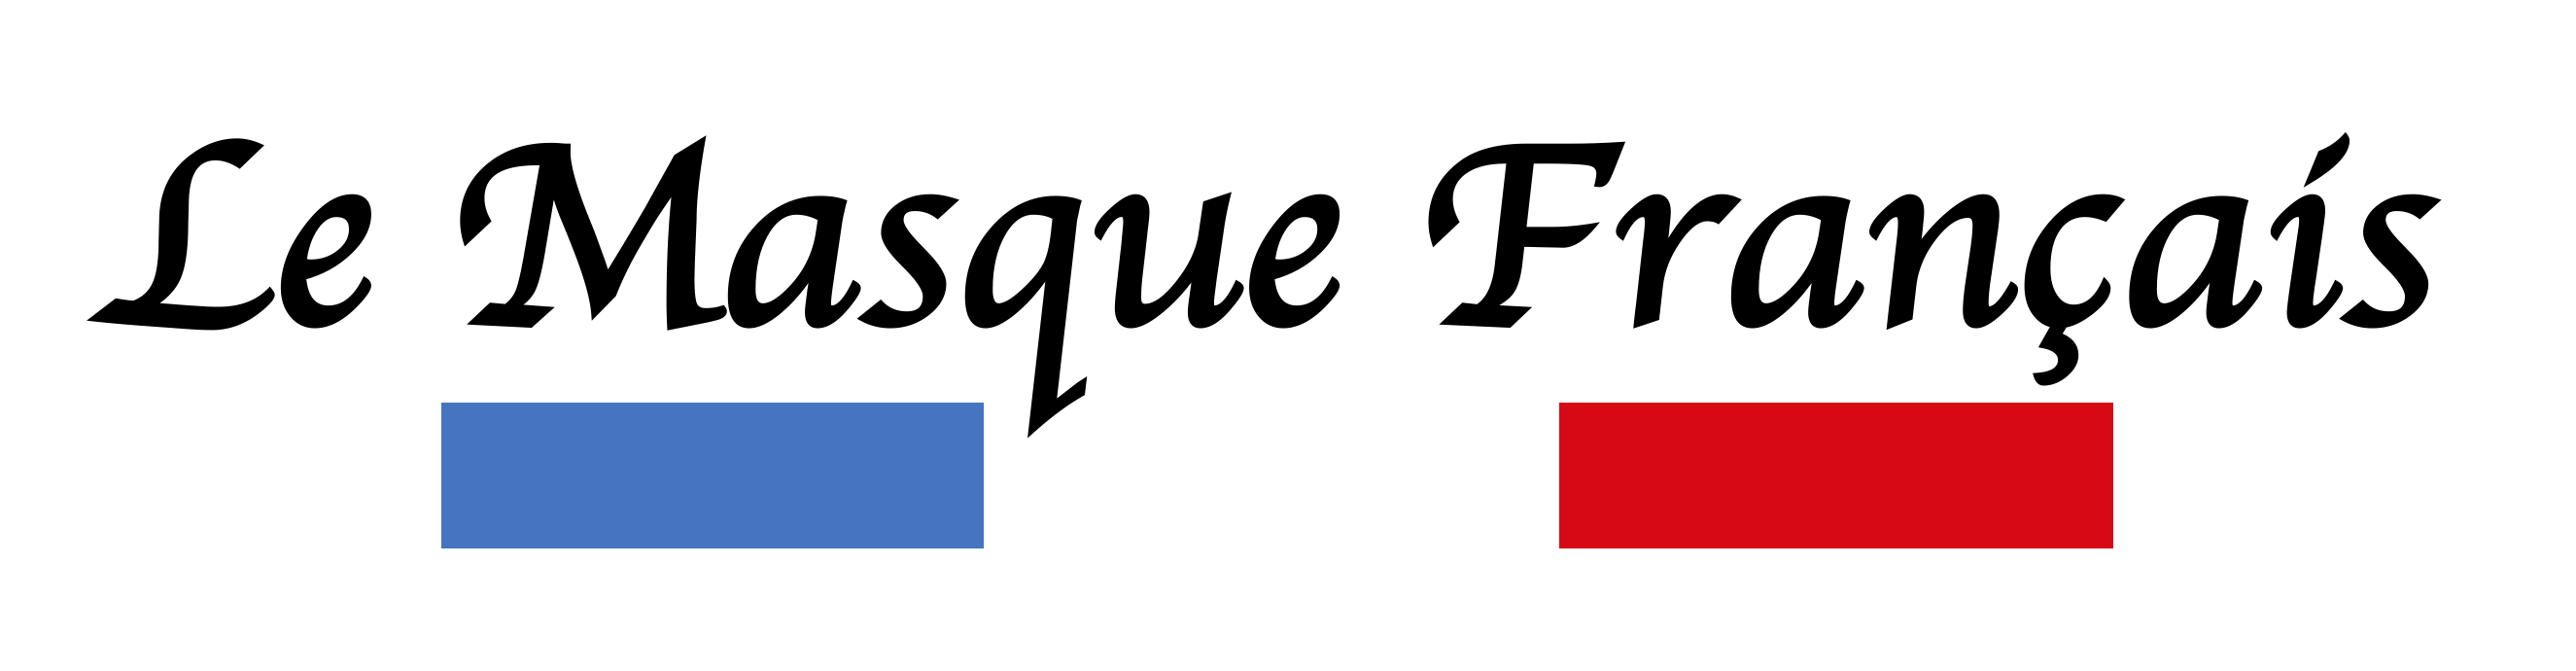 Le masque français logo